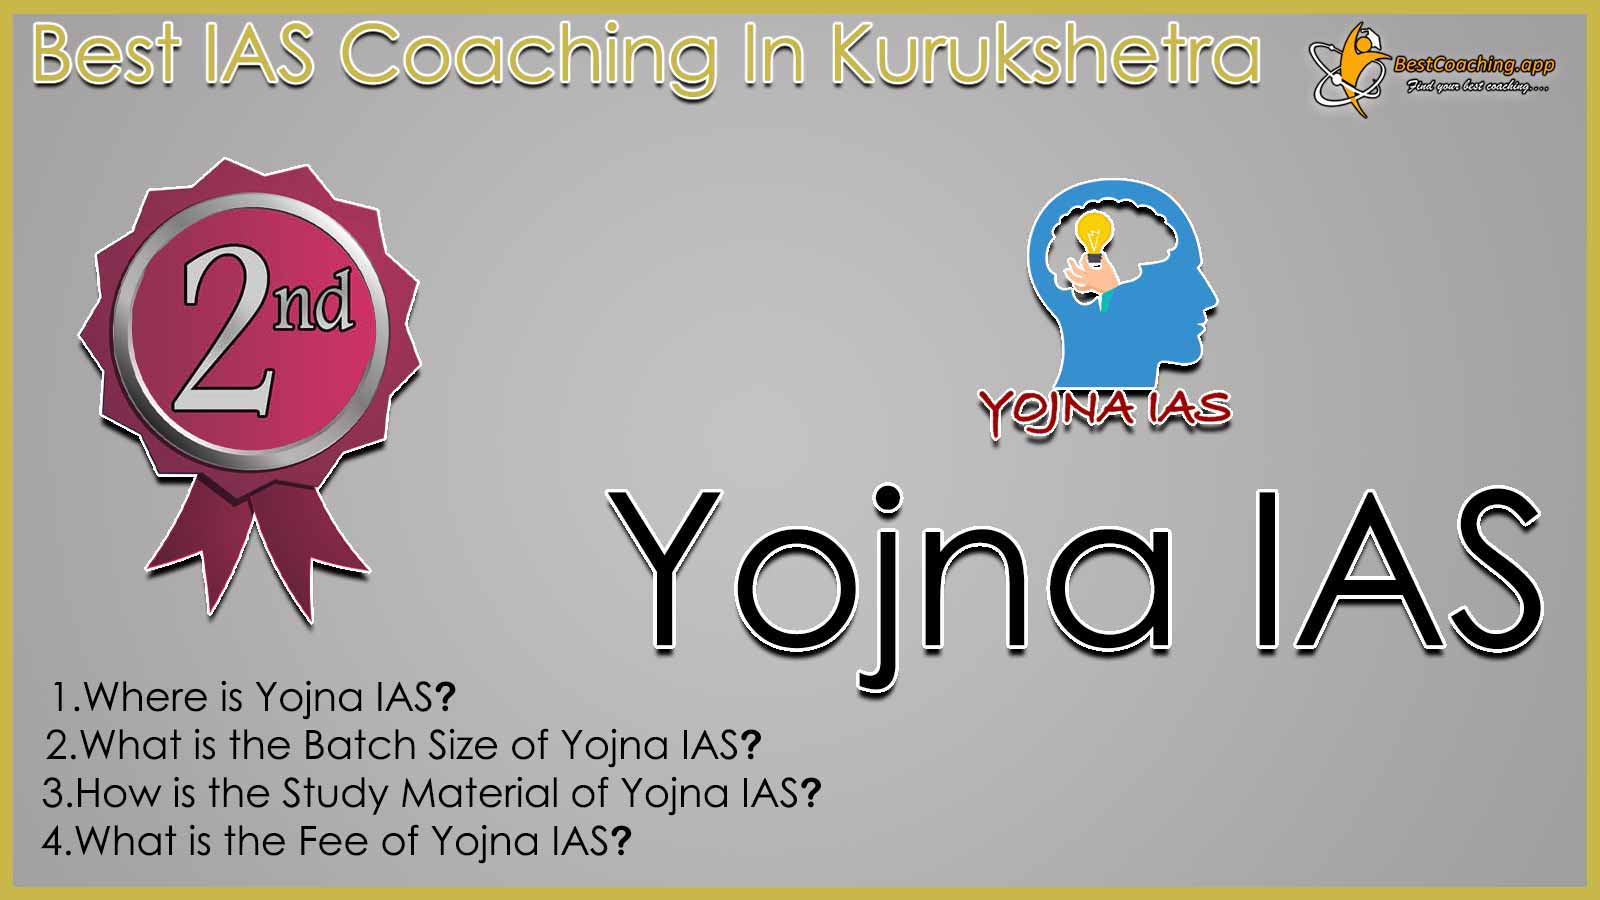 Rank 2 Best IAS Coaching in Kurukshetra